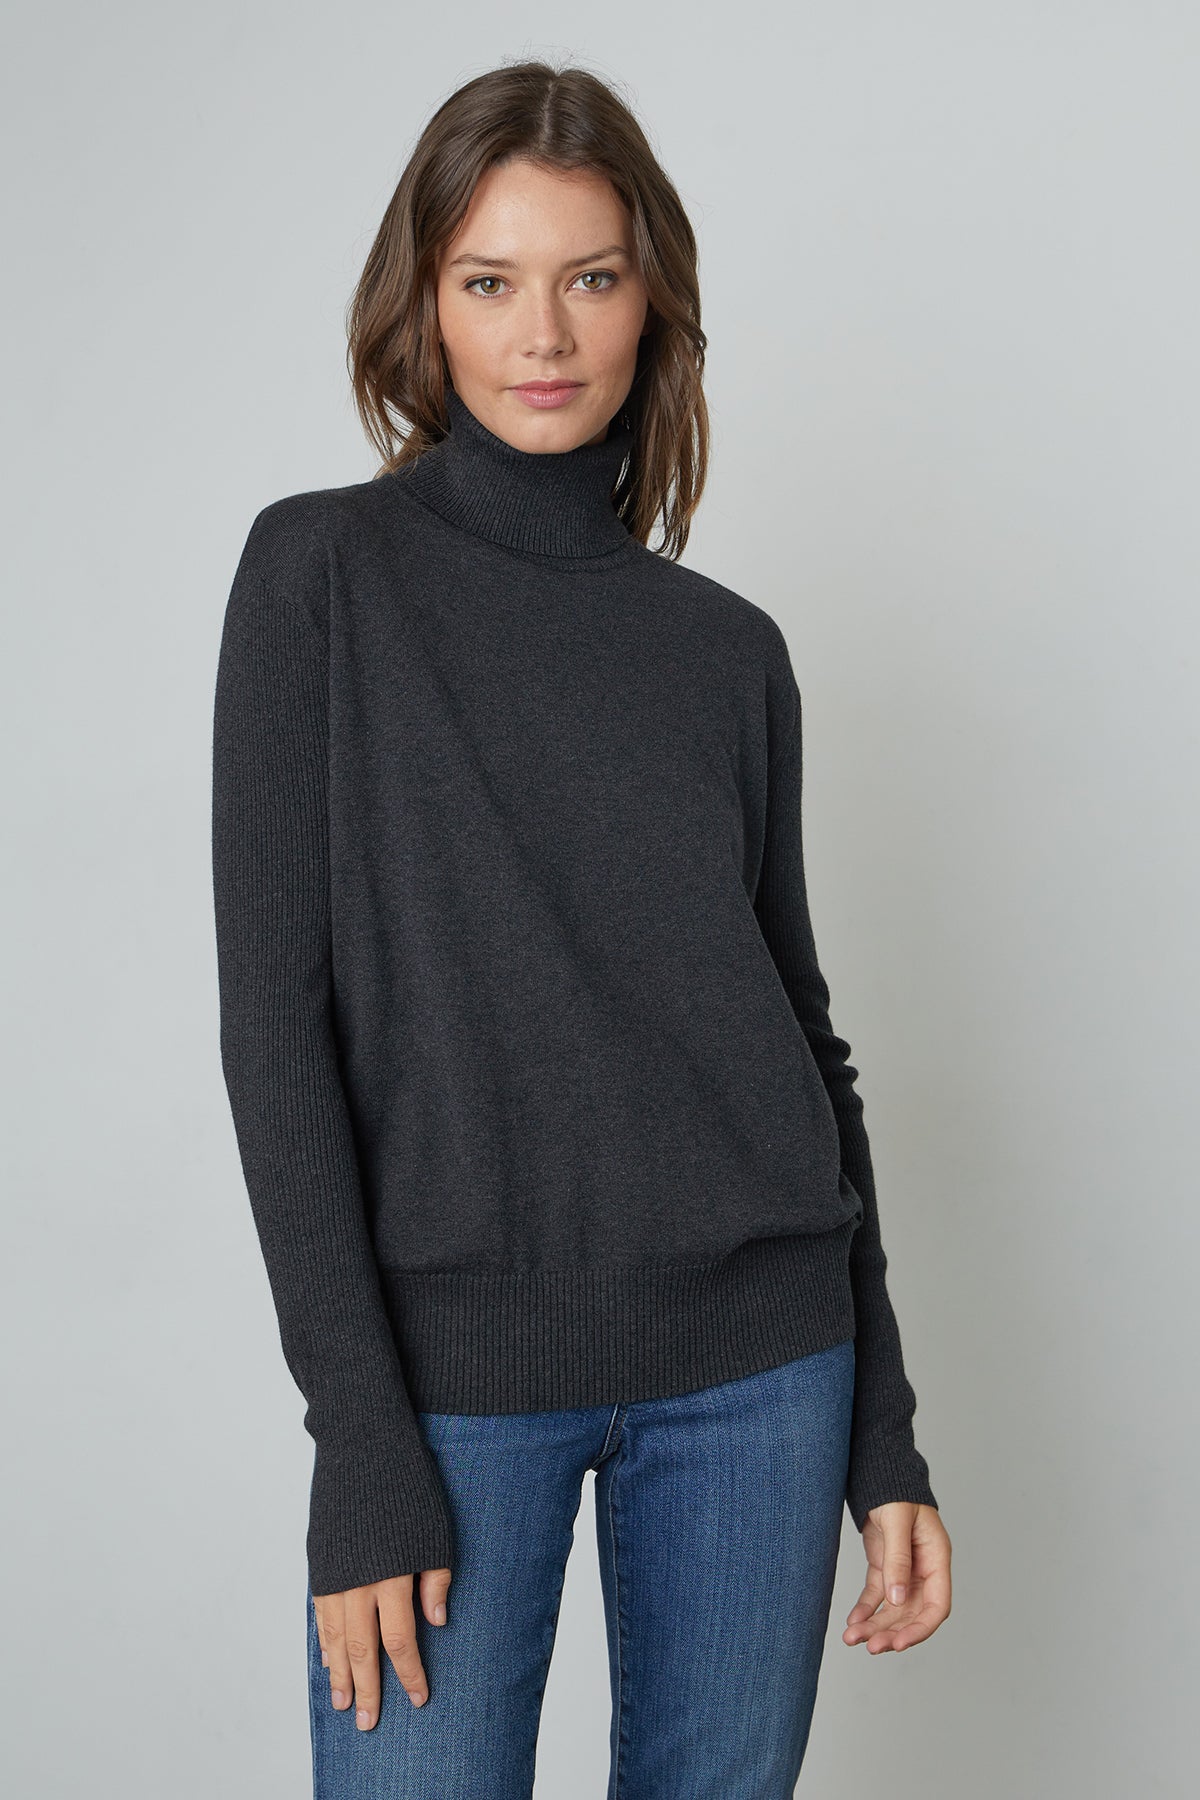 Lux Cotton Cashmere Renny Turtleneck Sweater in dark grey cinder front 2-25052572451009